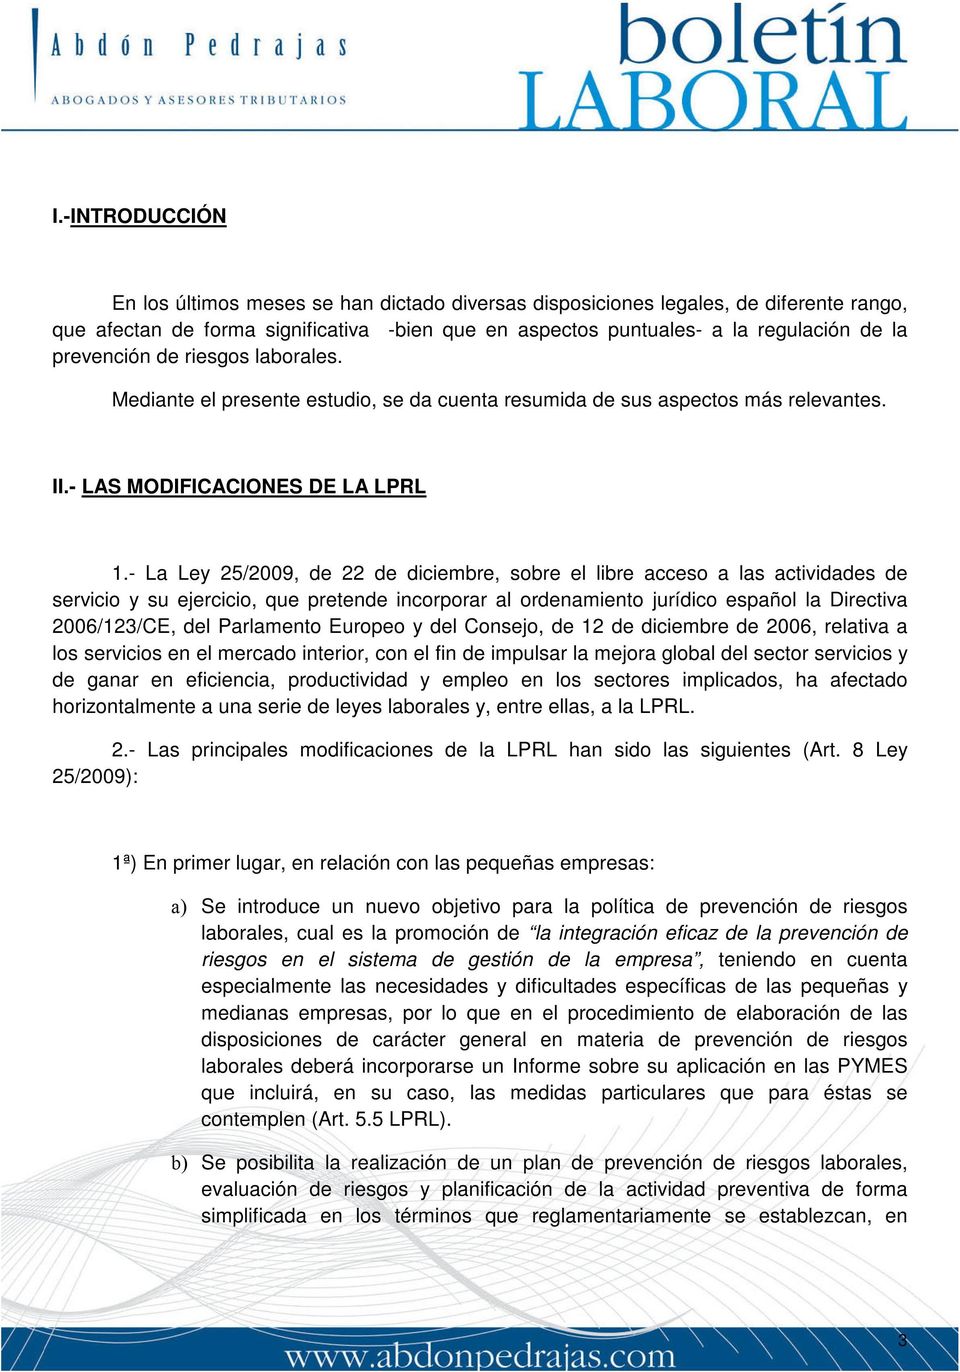 - La Ley 25/2009, de 22 de diciembre, sobre el libre acceso a las actividades de servicio y su ejercicio, que pretende incorporar al ordenamiento jurídico español la Directiva 2006/123/CE, del